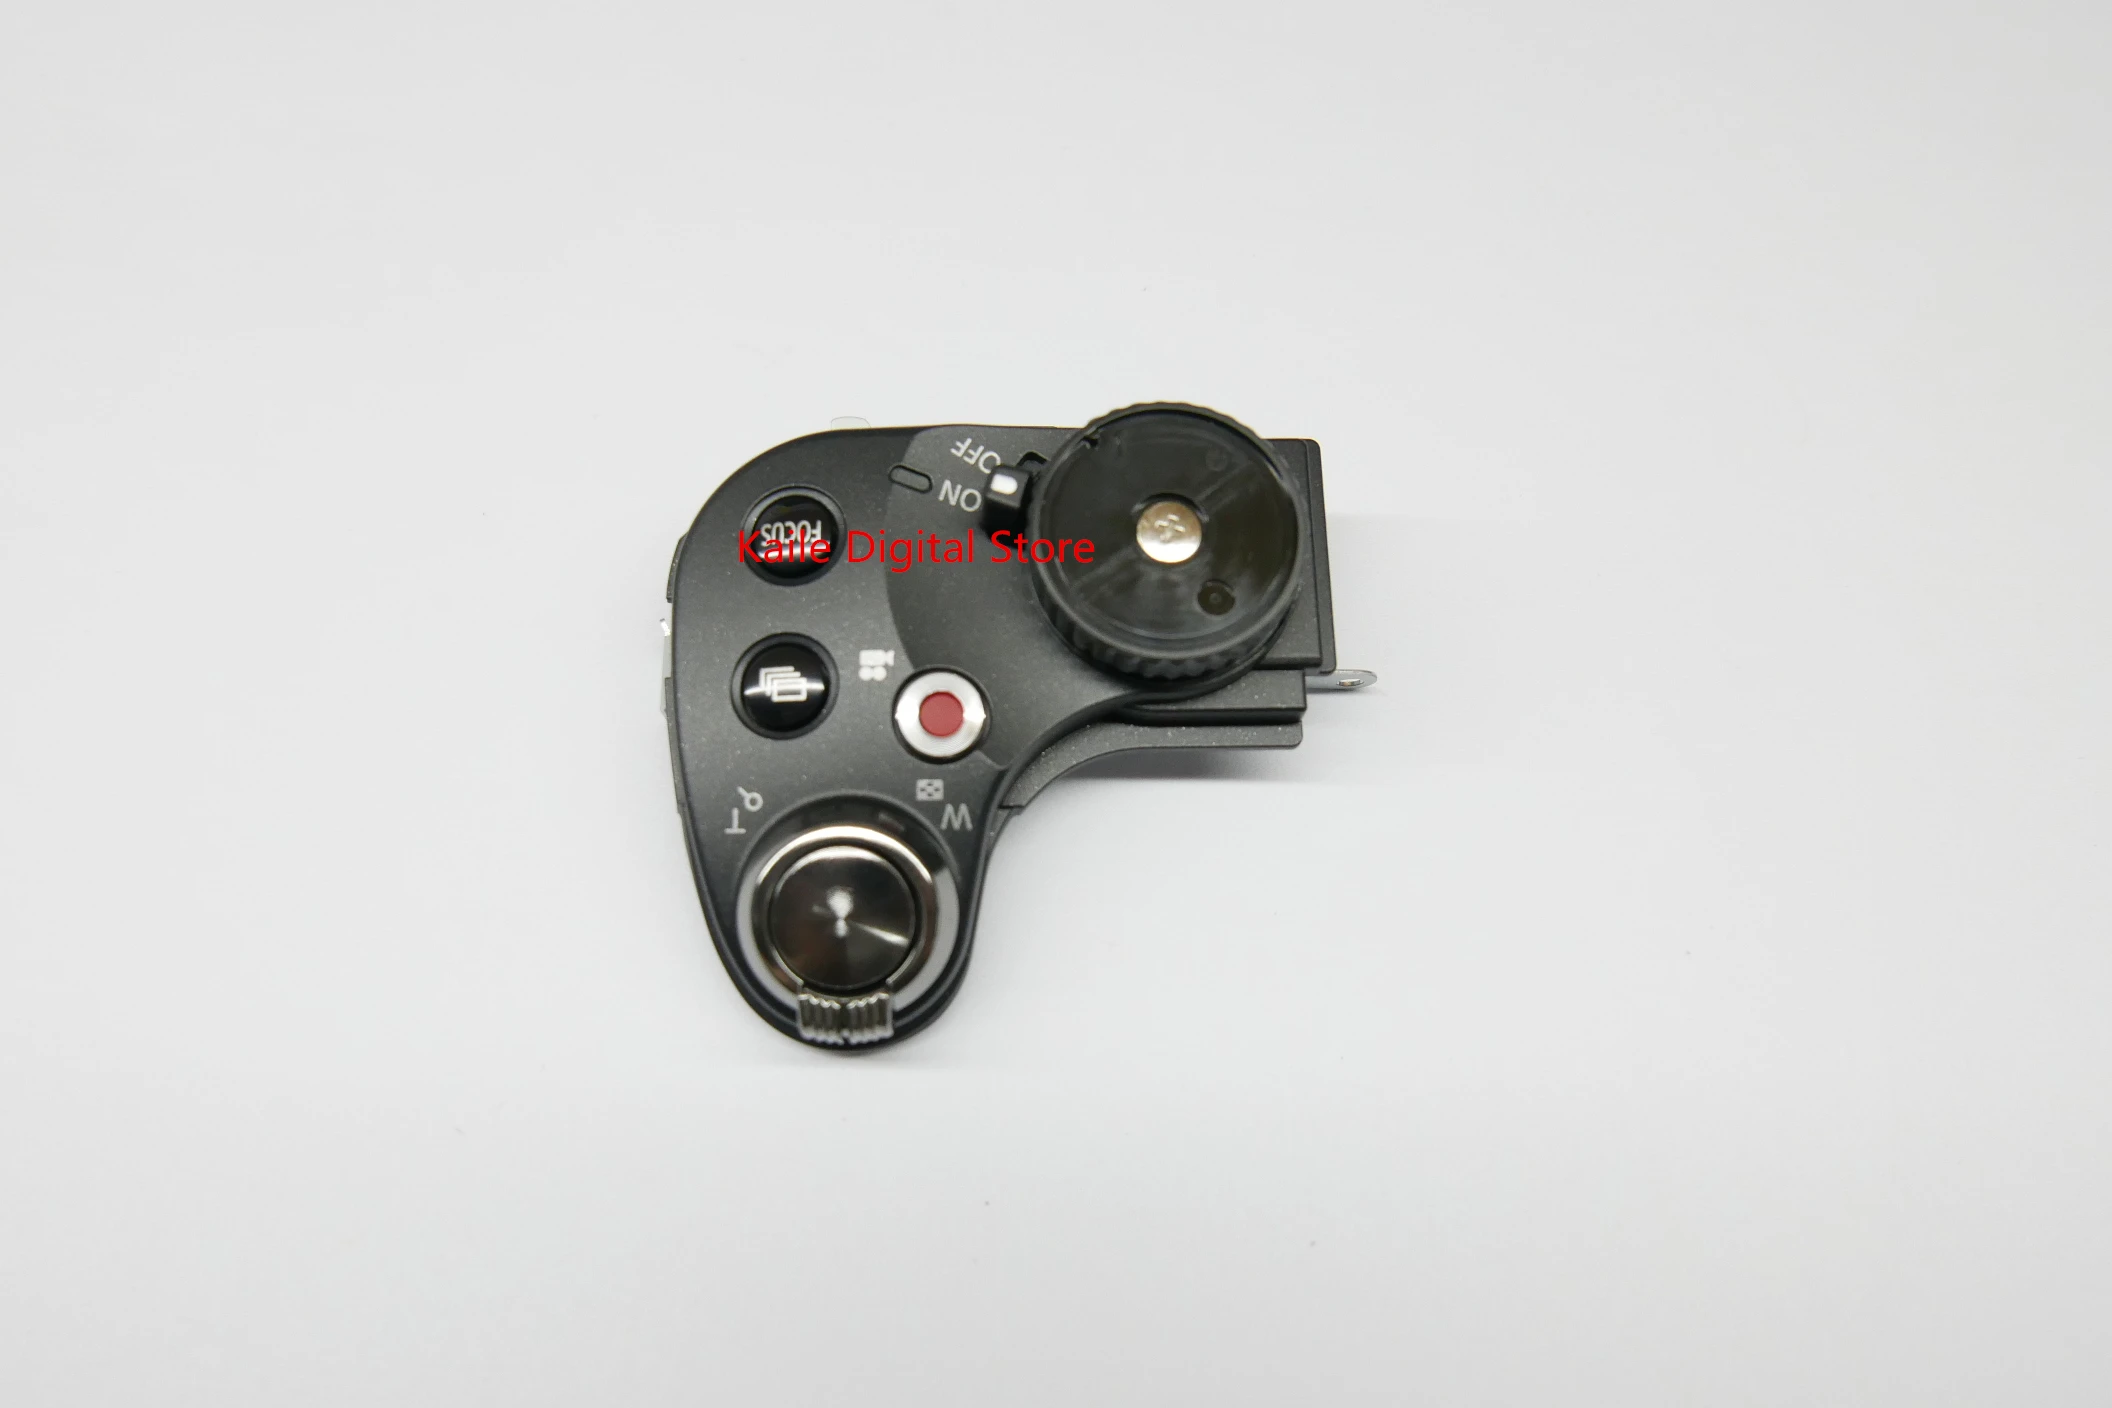 

Запасные части для Panasonic Lumix FZ72 FZ70 DMC-FZ72 верхняя крышка затвора кнопка режима переключатель питания Ass'y VYK6P04